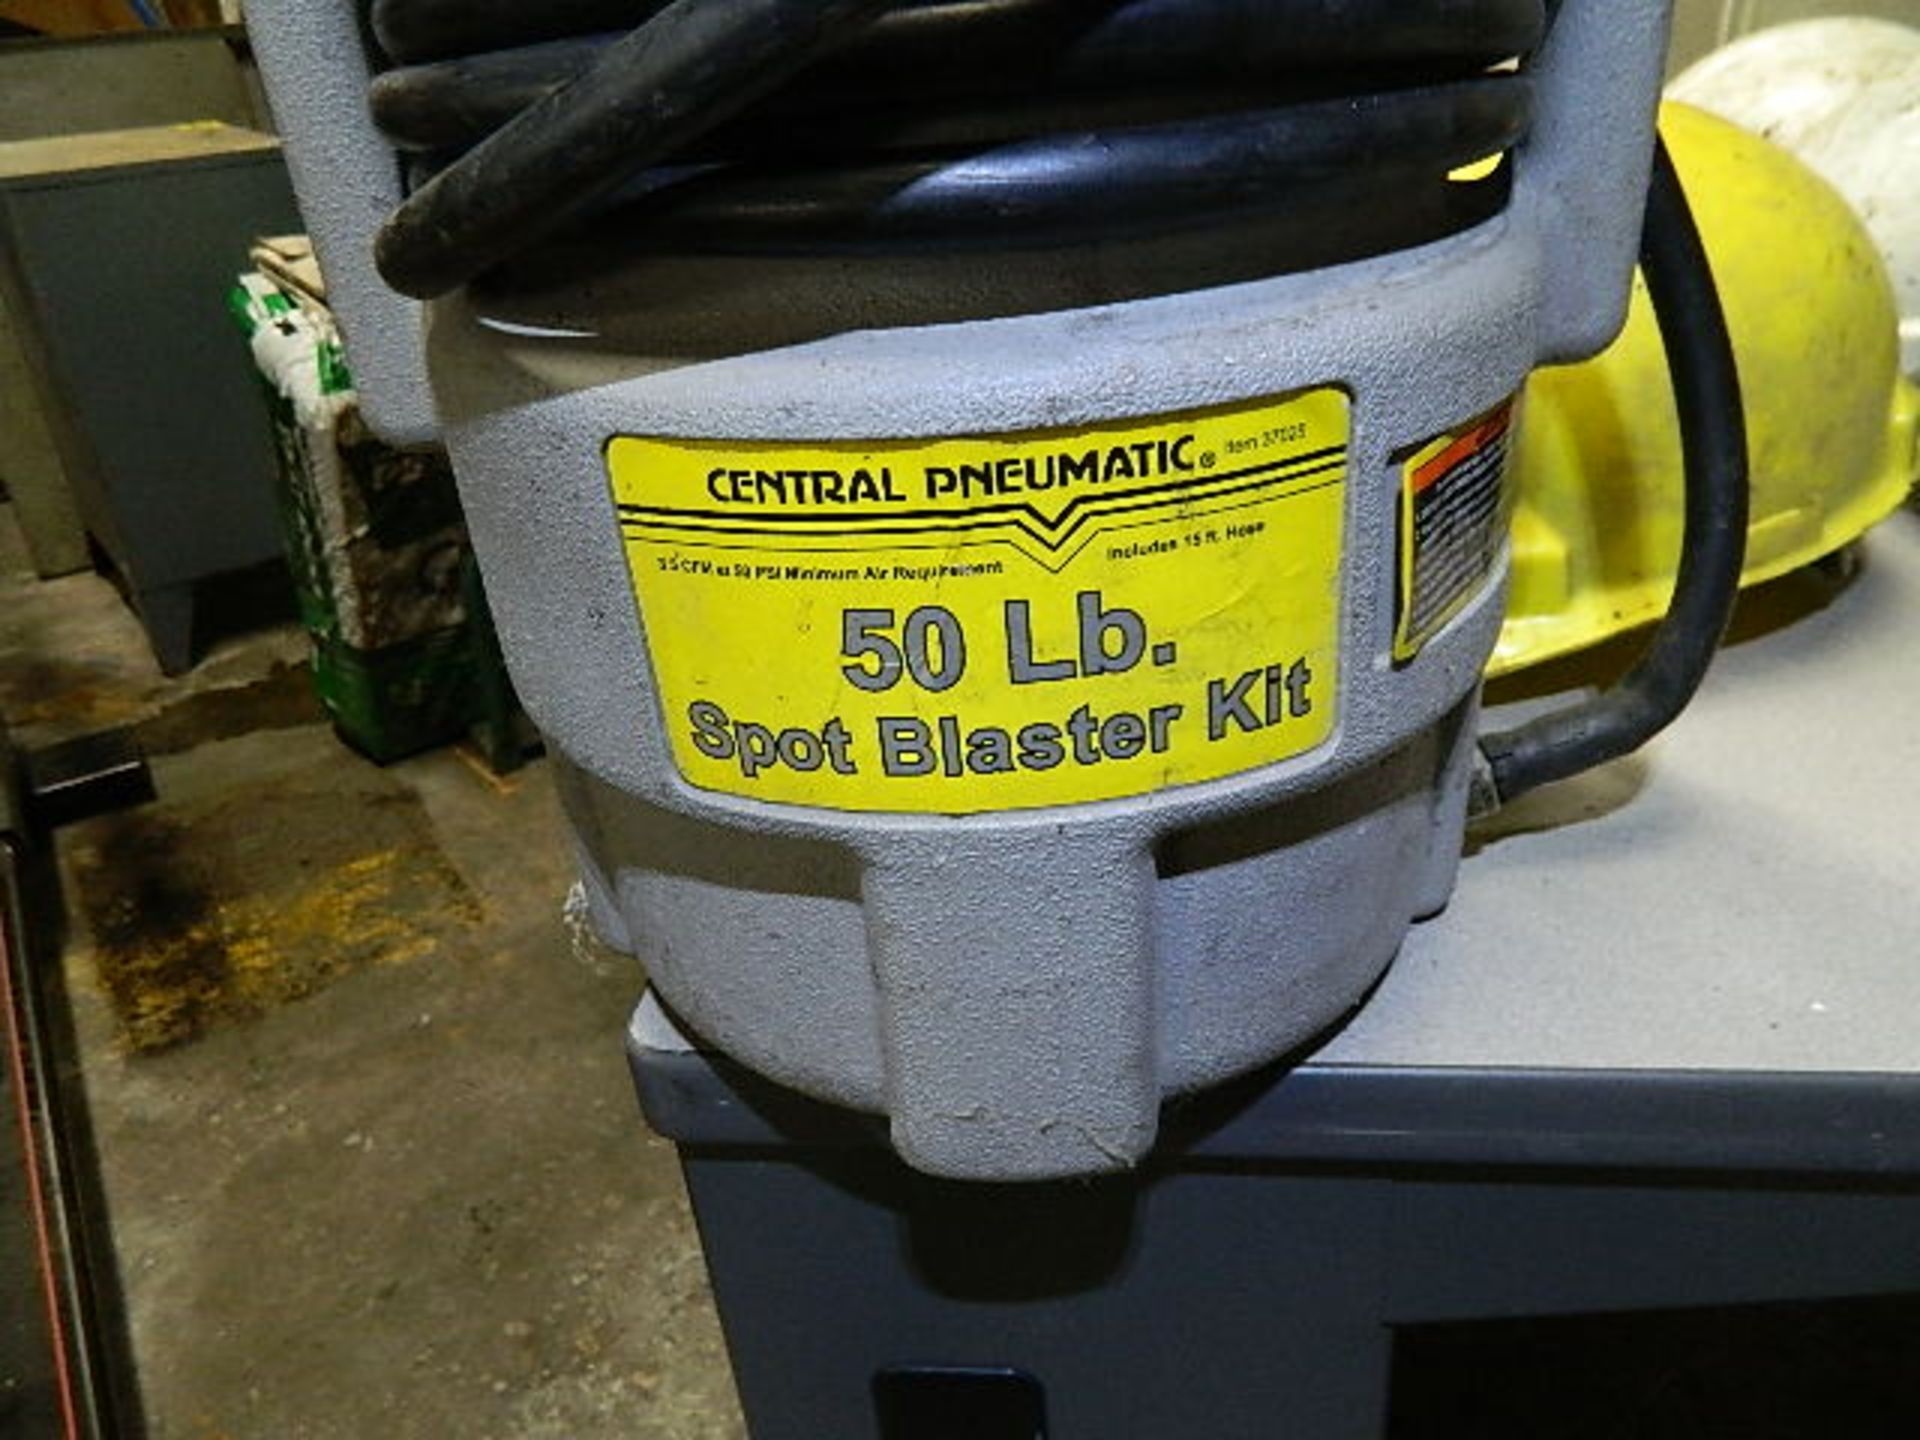 Spot Blaster. Central Pneumatic 50 LB. Spot Blaster (Note: No Gun) - Image 2 of 3